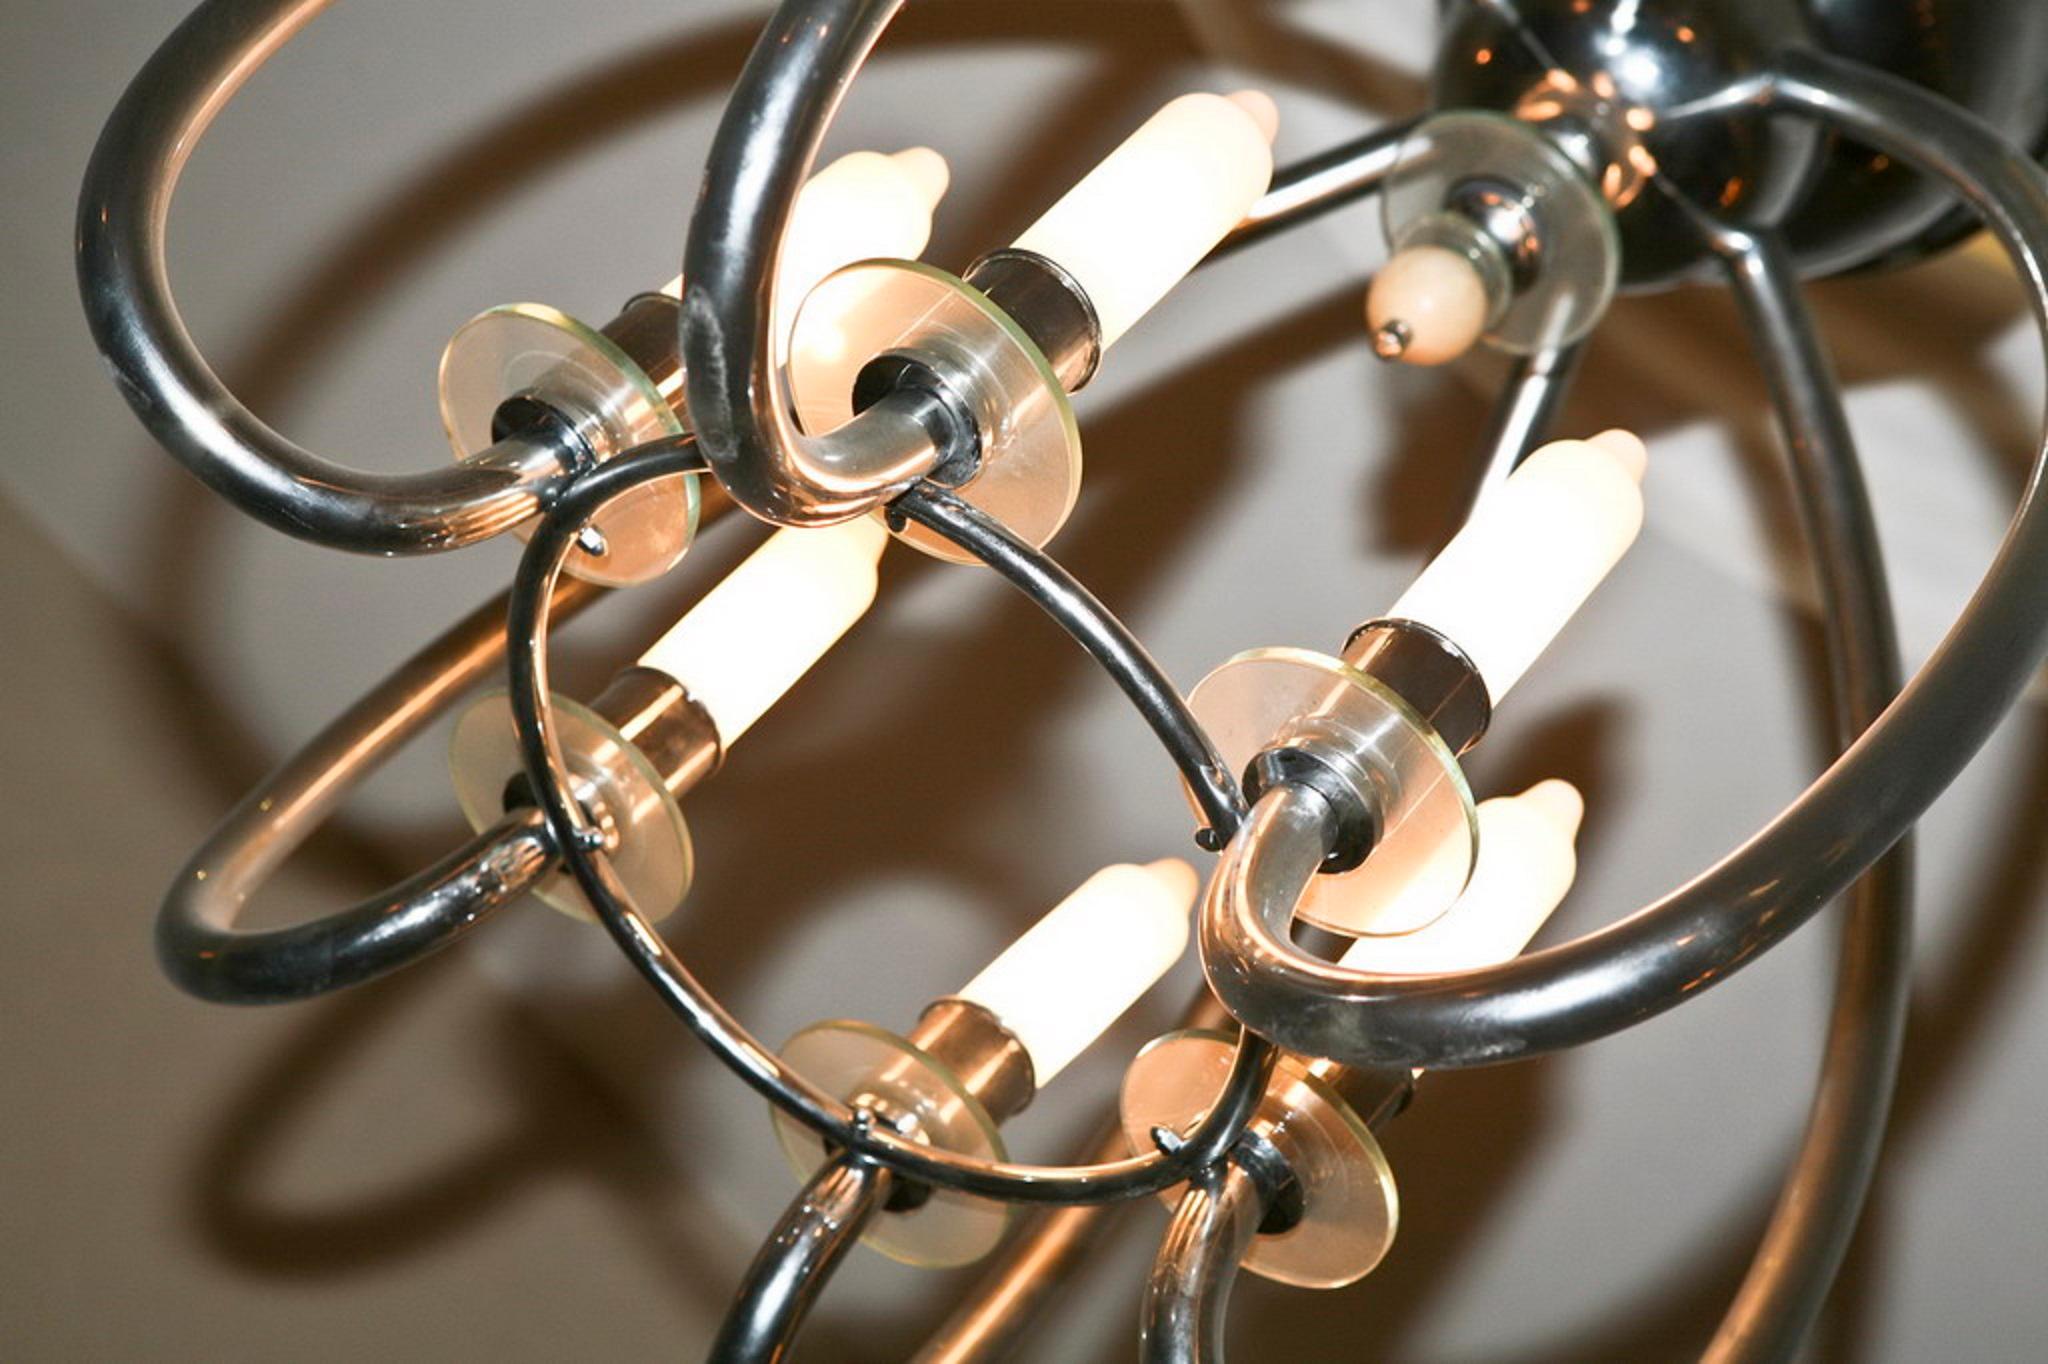 Superbe lampe suspendue

Matière : Bronze chromé, verre opalin, verre
Style : Art Déco
Pays : Allemand
Si vous recherchez des appliques pour assortir votre éclairage de plafond, nous avons ce qu'il vous faut.
Pour prendre soin de votre propriété et